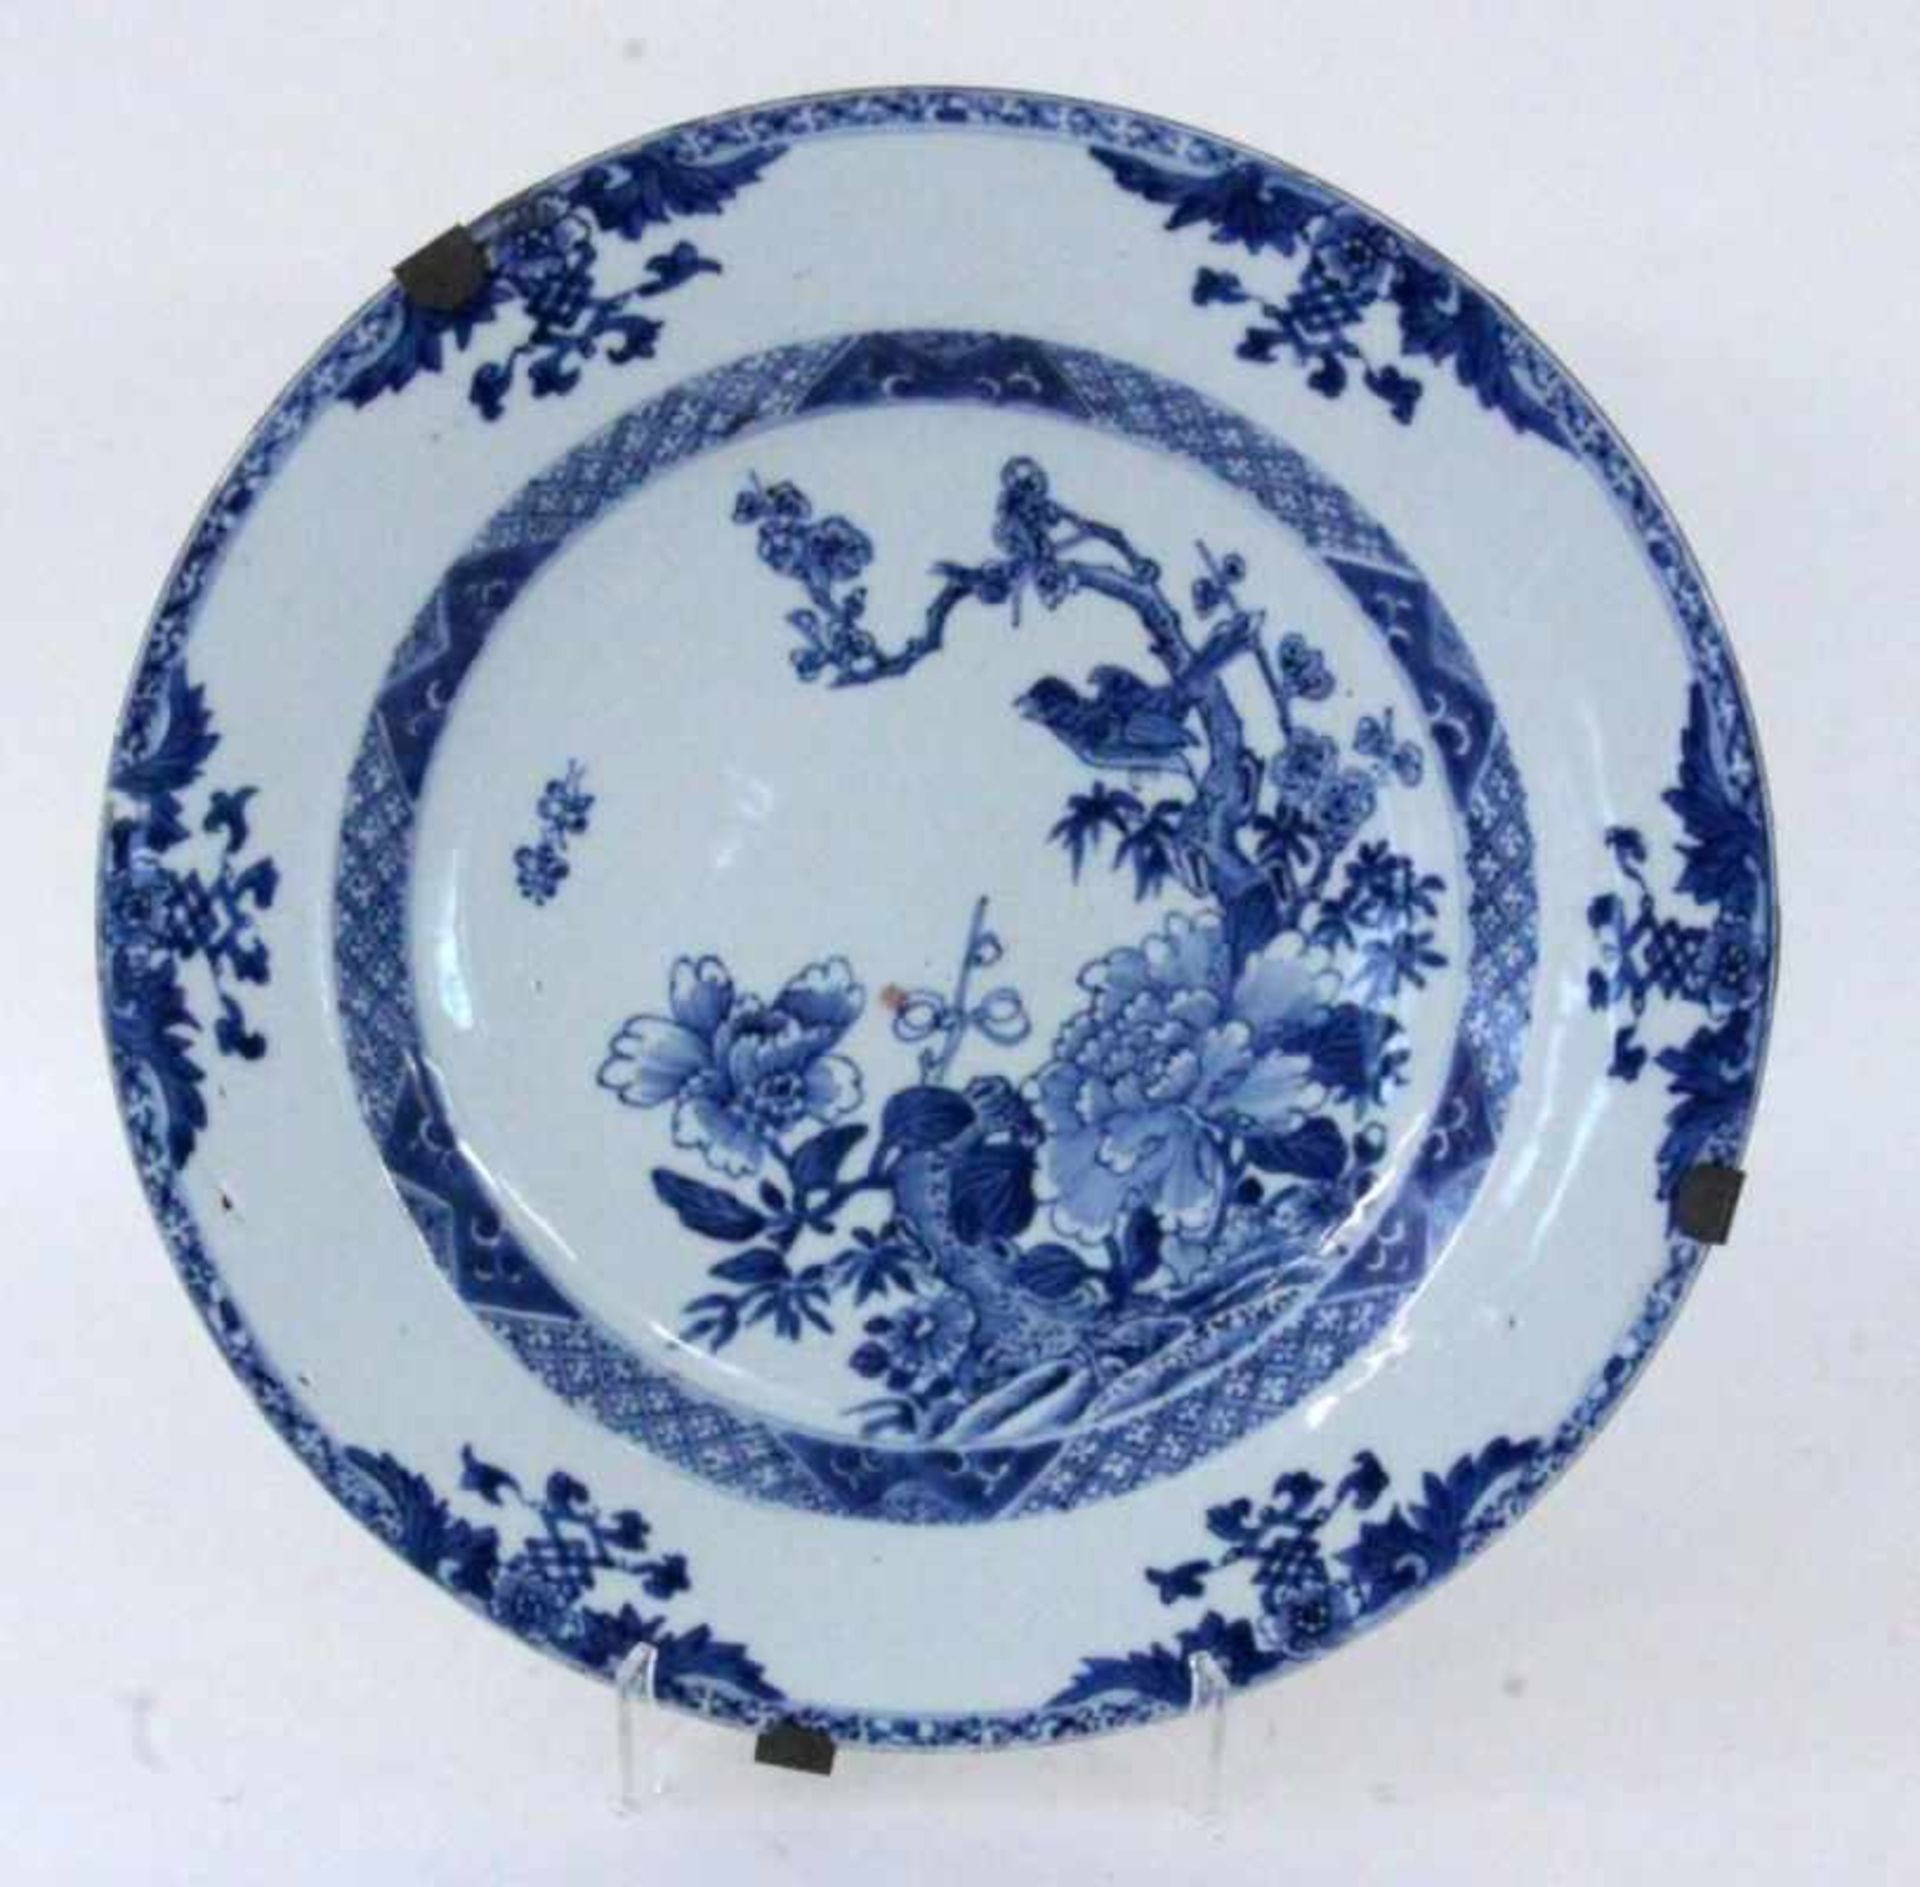 CHINESISCHER WANDTELLER um 1900 Mit Blaumalerei. D.32cm A CHINESE WALL PLATE ca. 1900 With blue